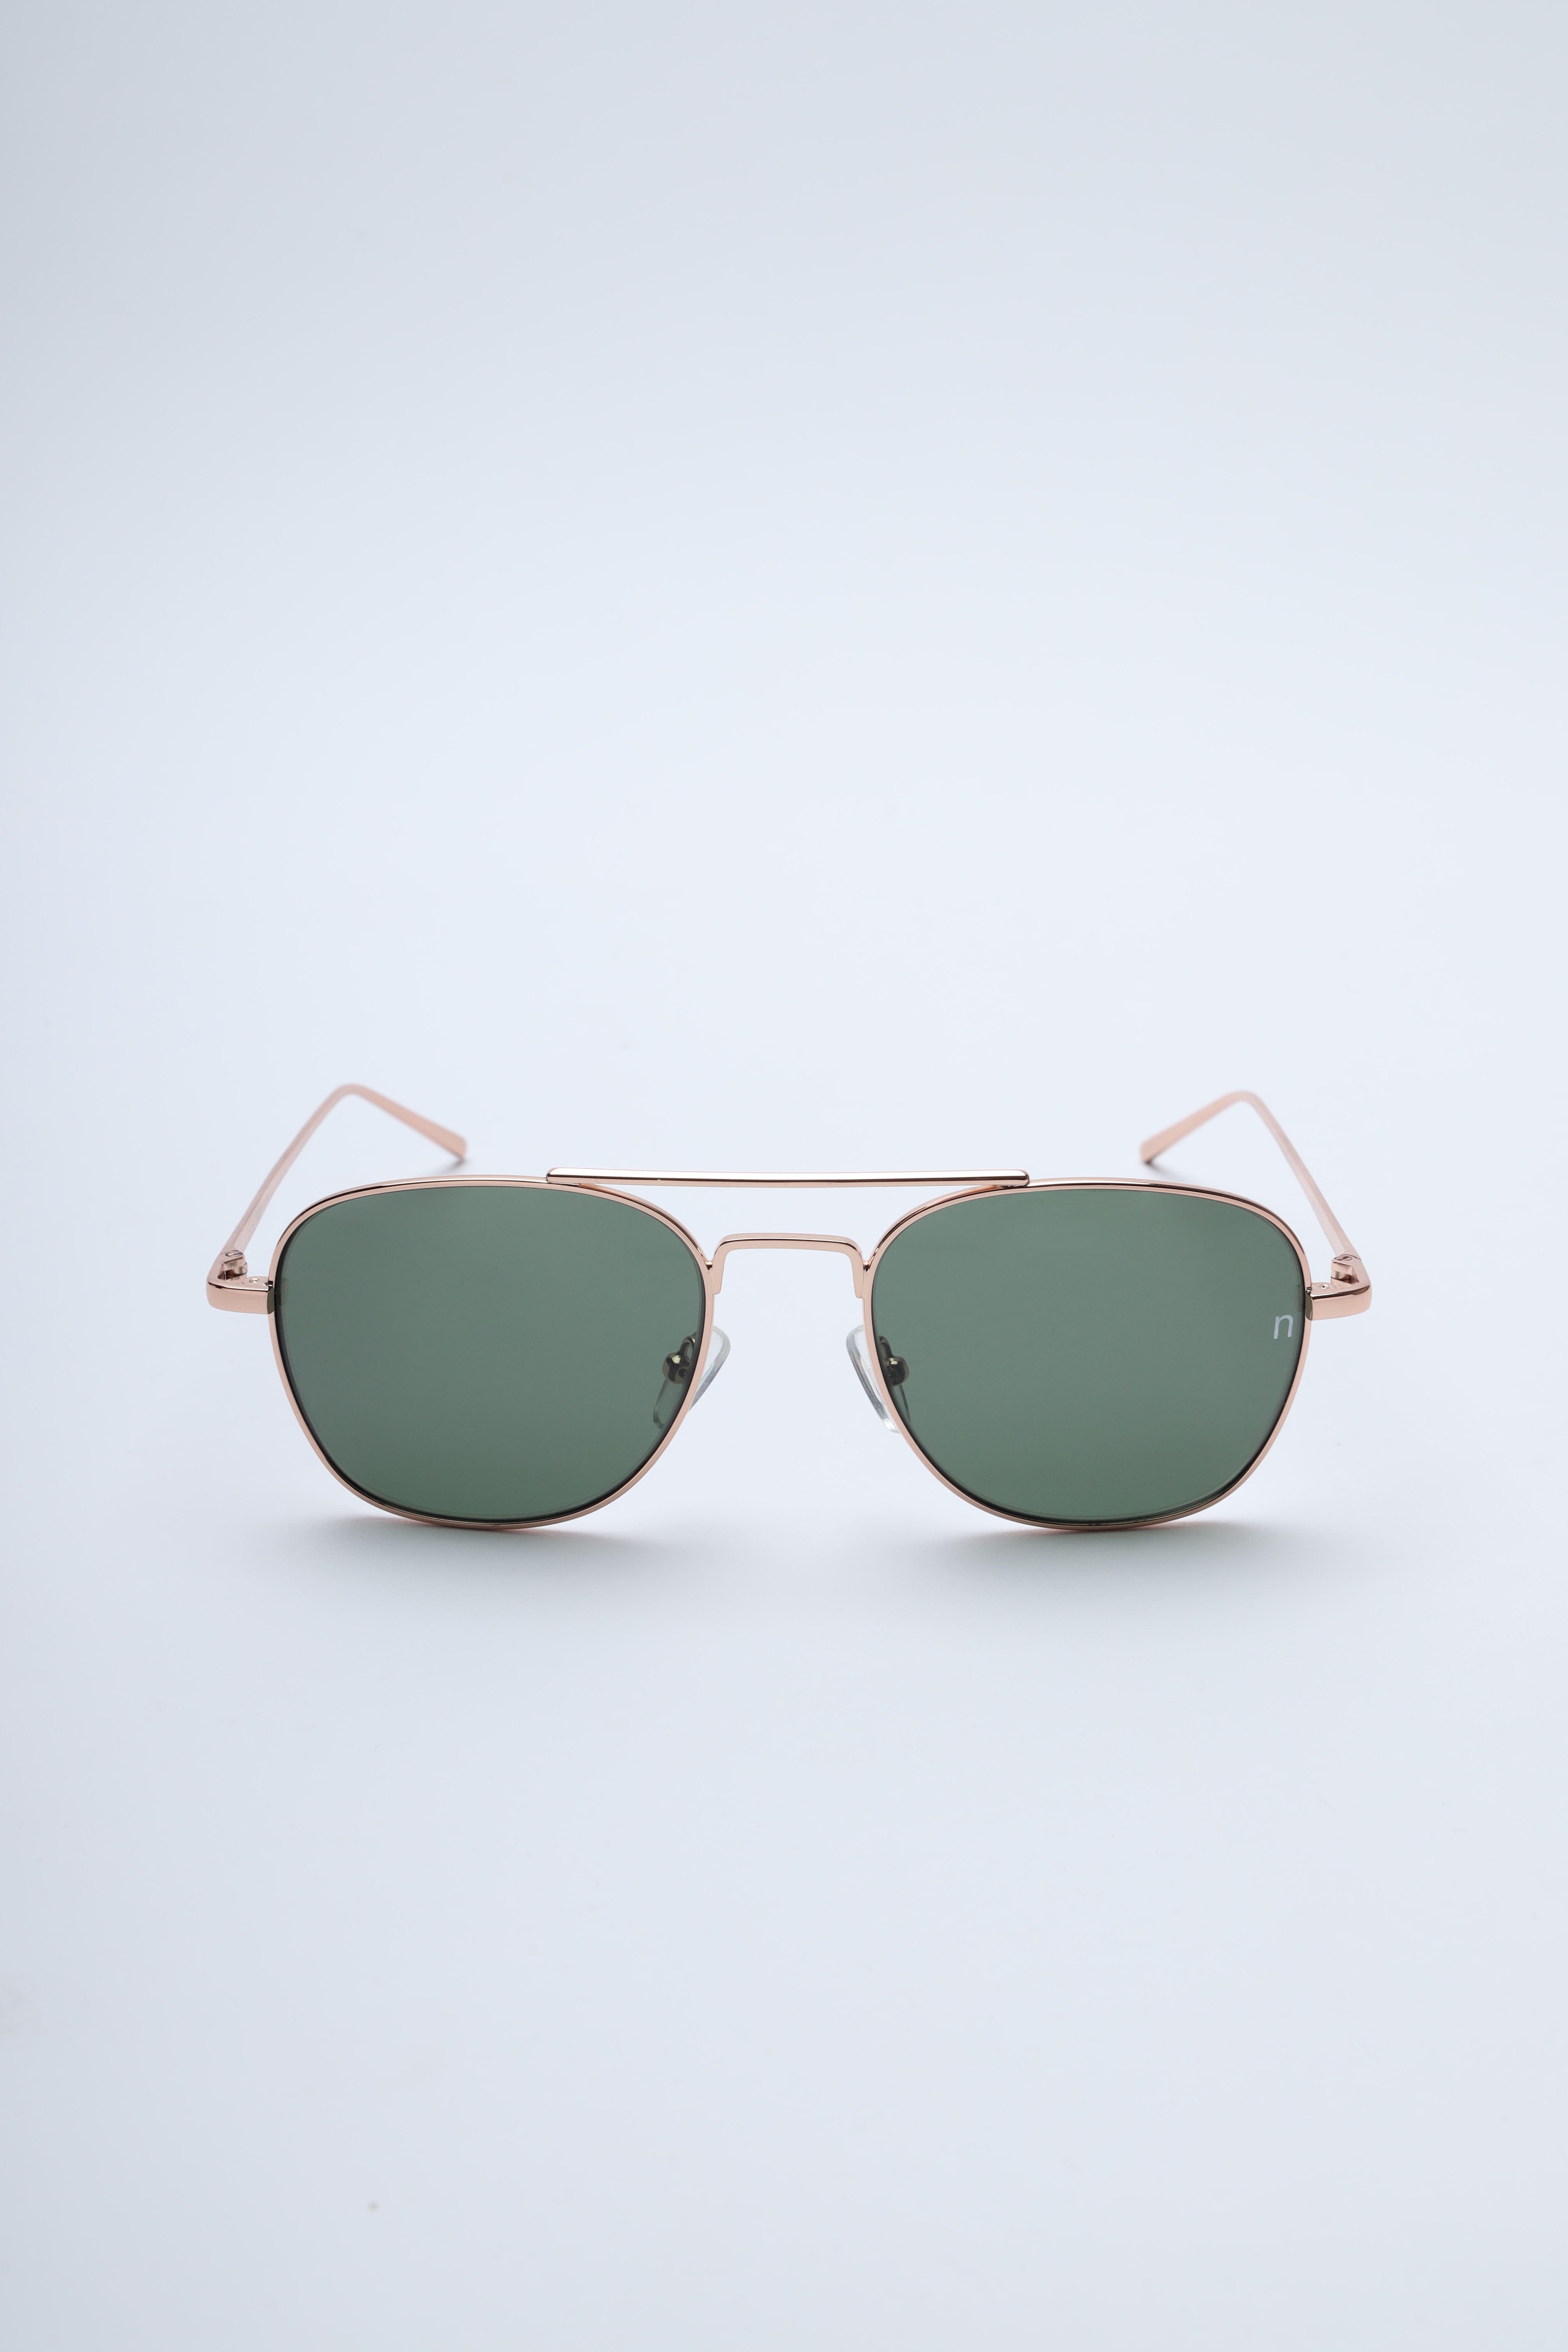 Buy Noggah Stainless Steel Sunglasses for Men & Women, Combination